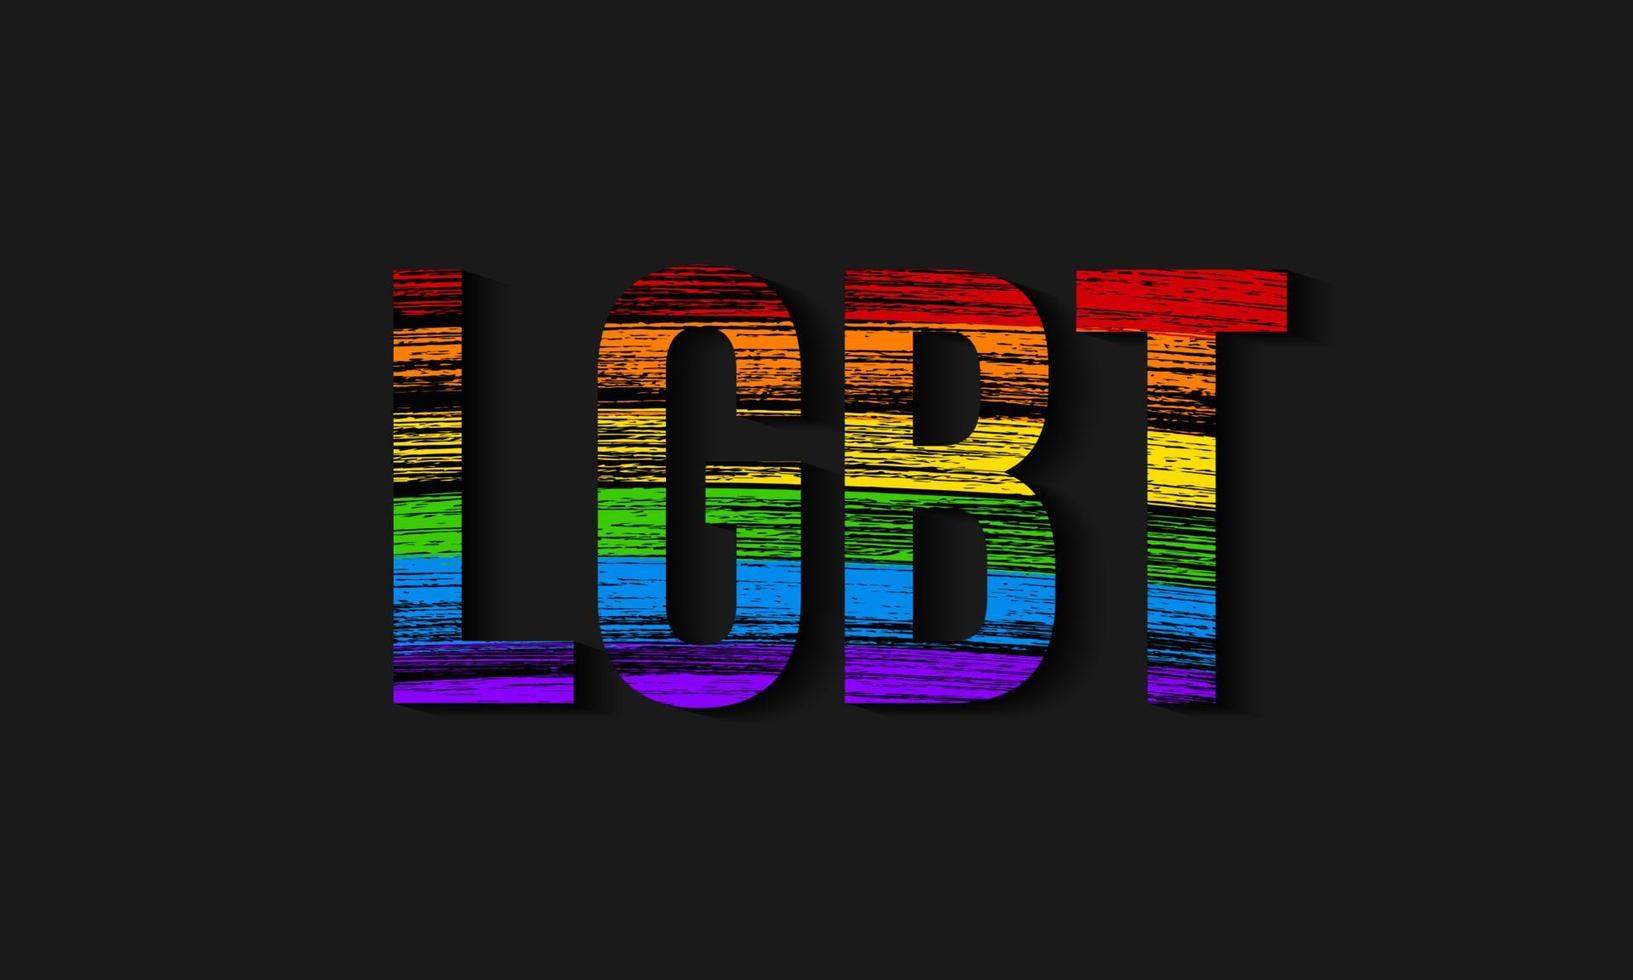 simbolo di movimenti sociali lesbici, gay, bisessuali, transgender. bandiera della comunità lgbt. i tratti di matita strutturano i colori dell'arcobaleno. modello di disegno vettoriale facile da modificare.